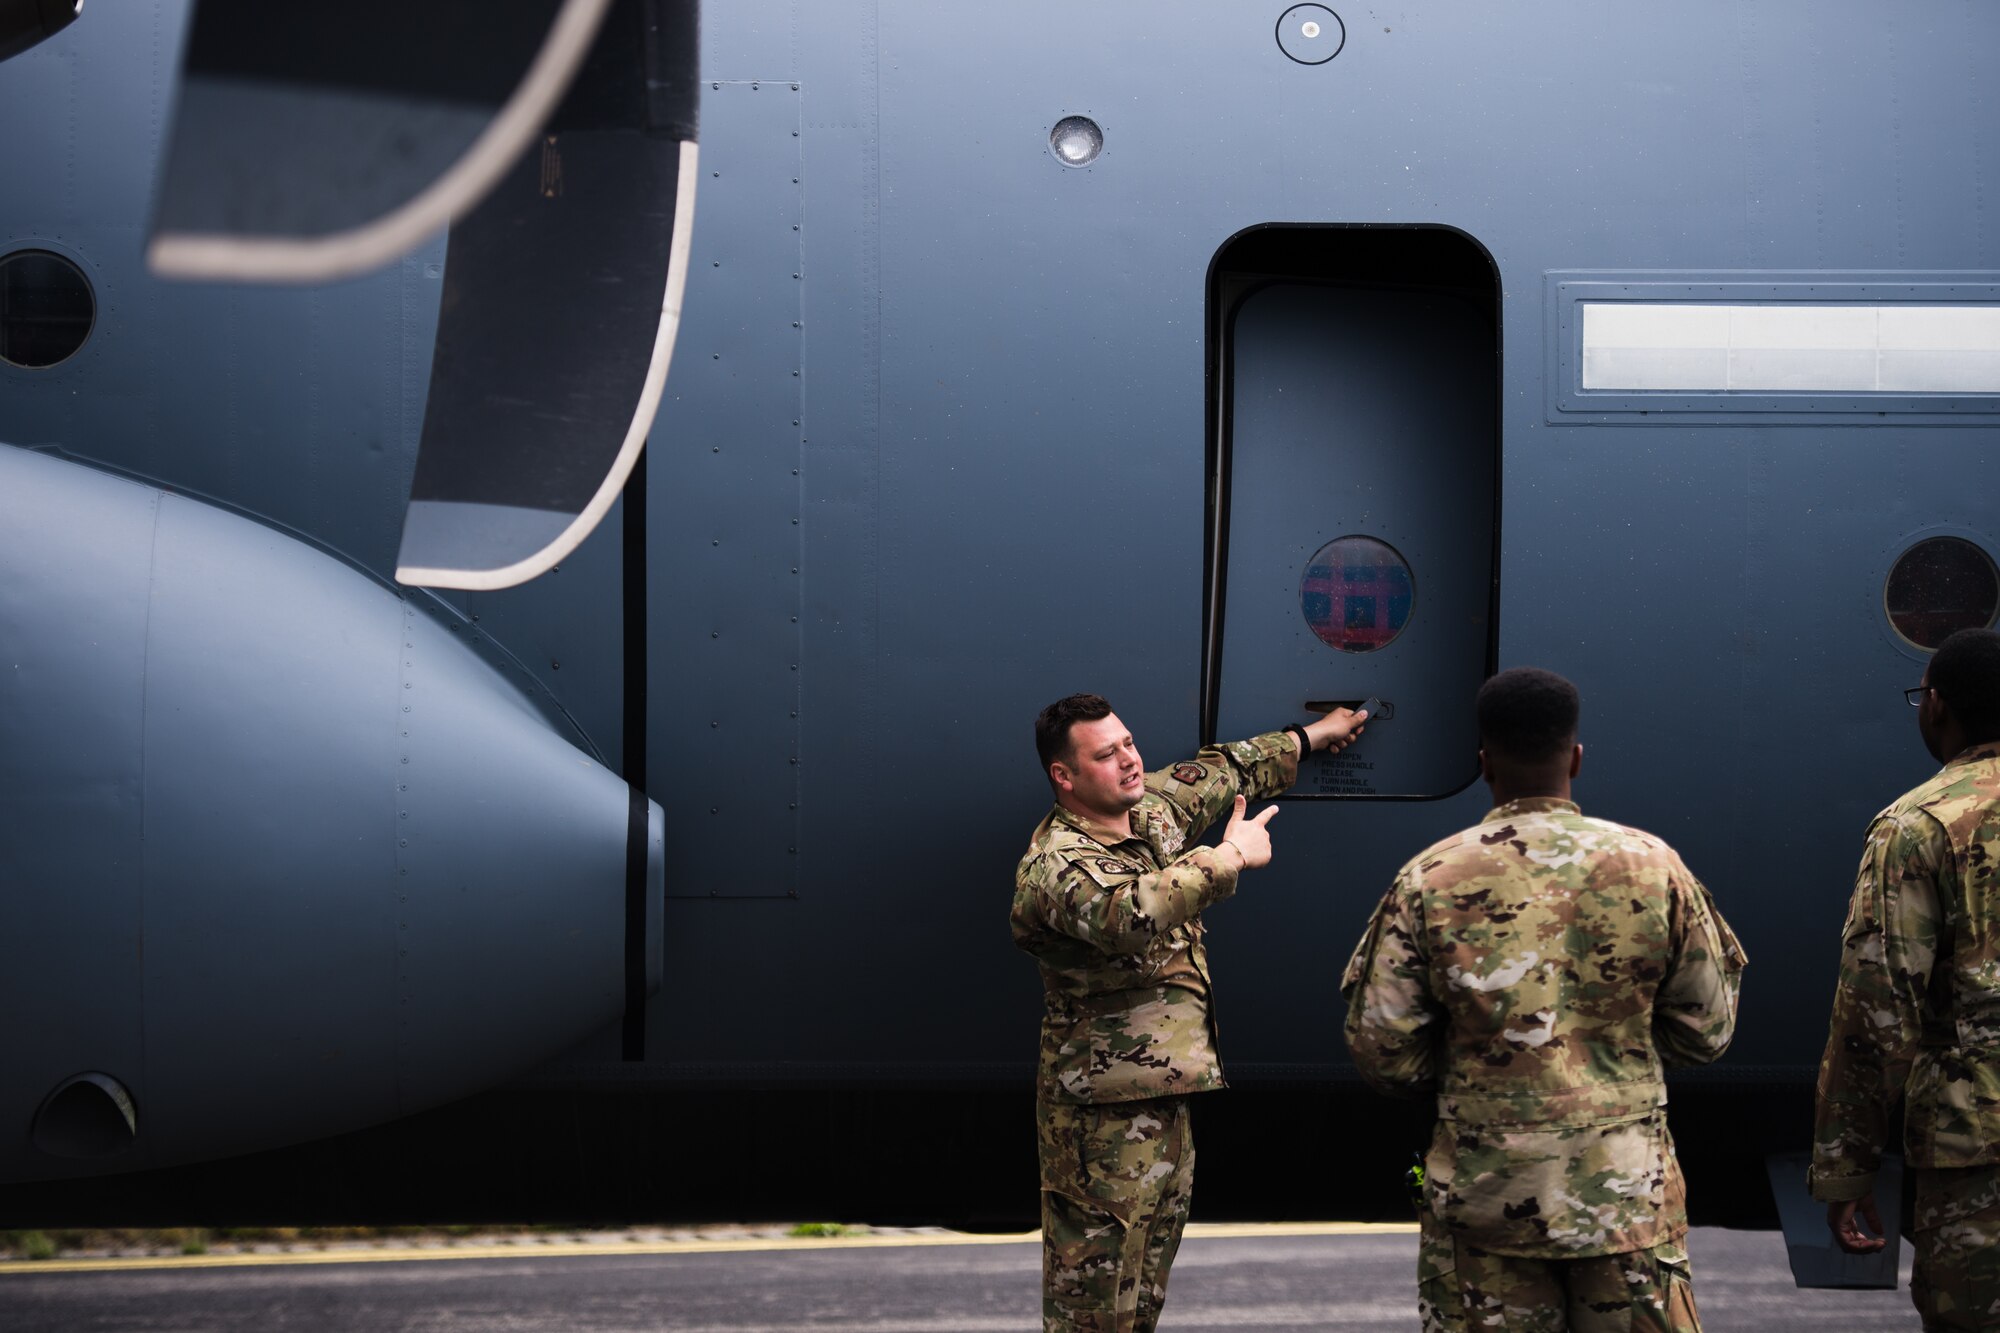 Photo of Airman opening aircraft door